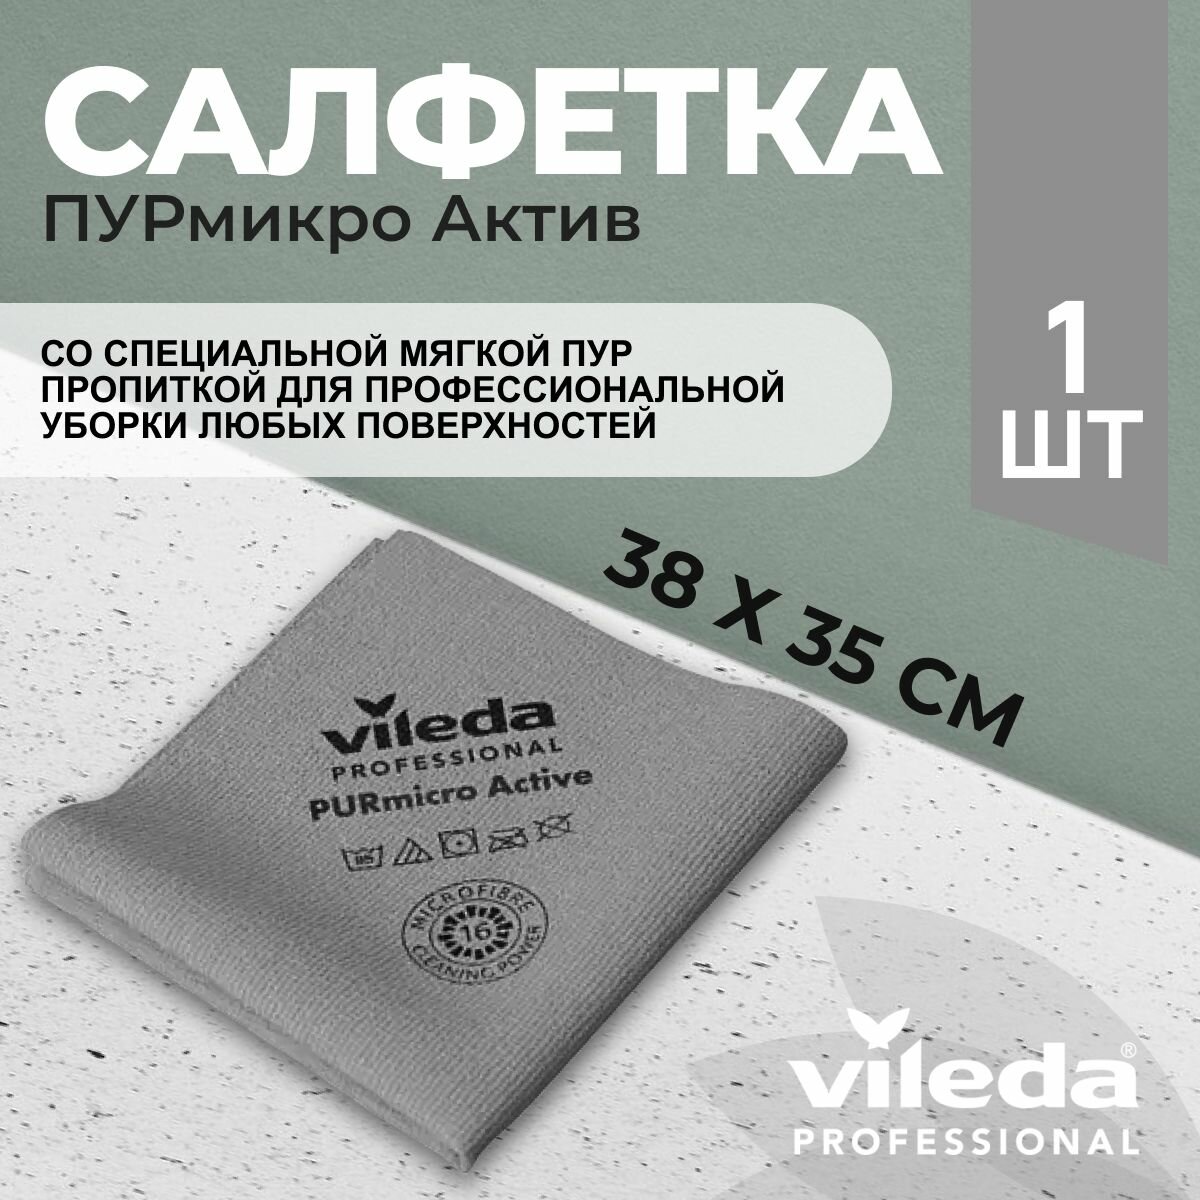 Салфетка профессиональная для уборки из микроволокна Vileda ПУРмикро Актив PURmicro Active 38х35 см, серый, 1 шт.